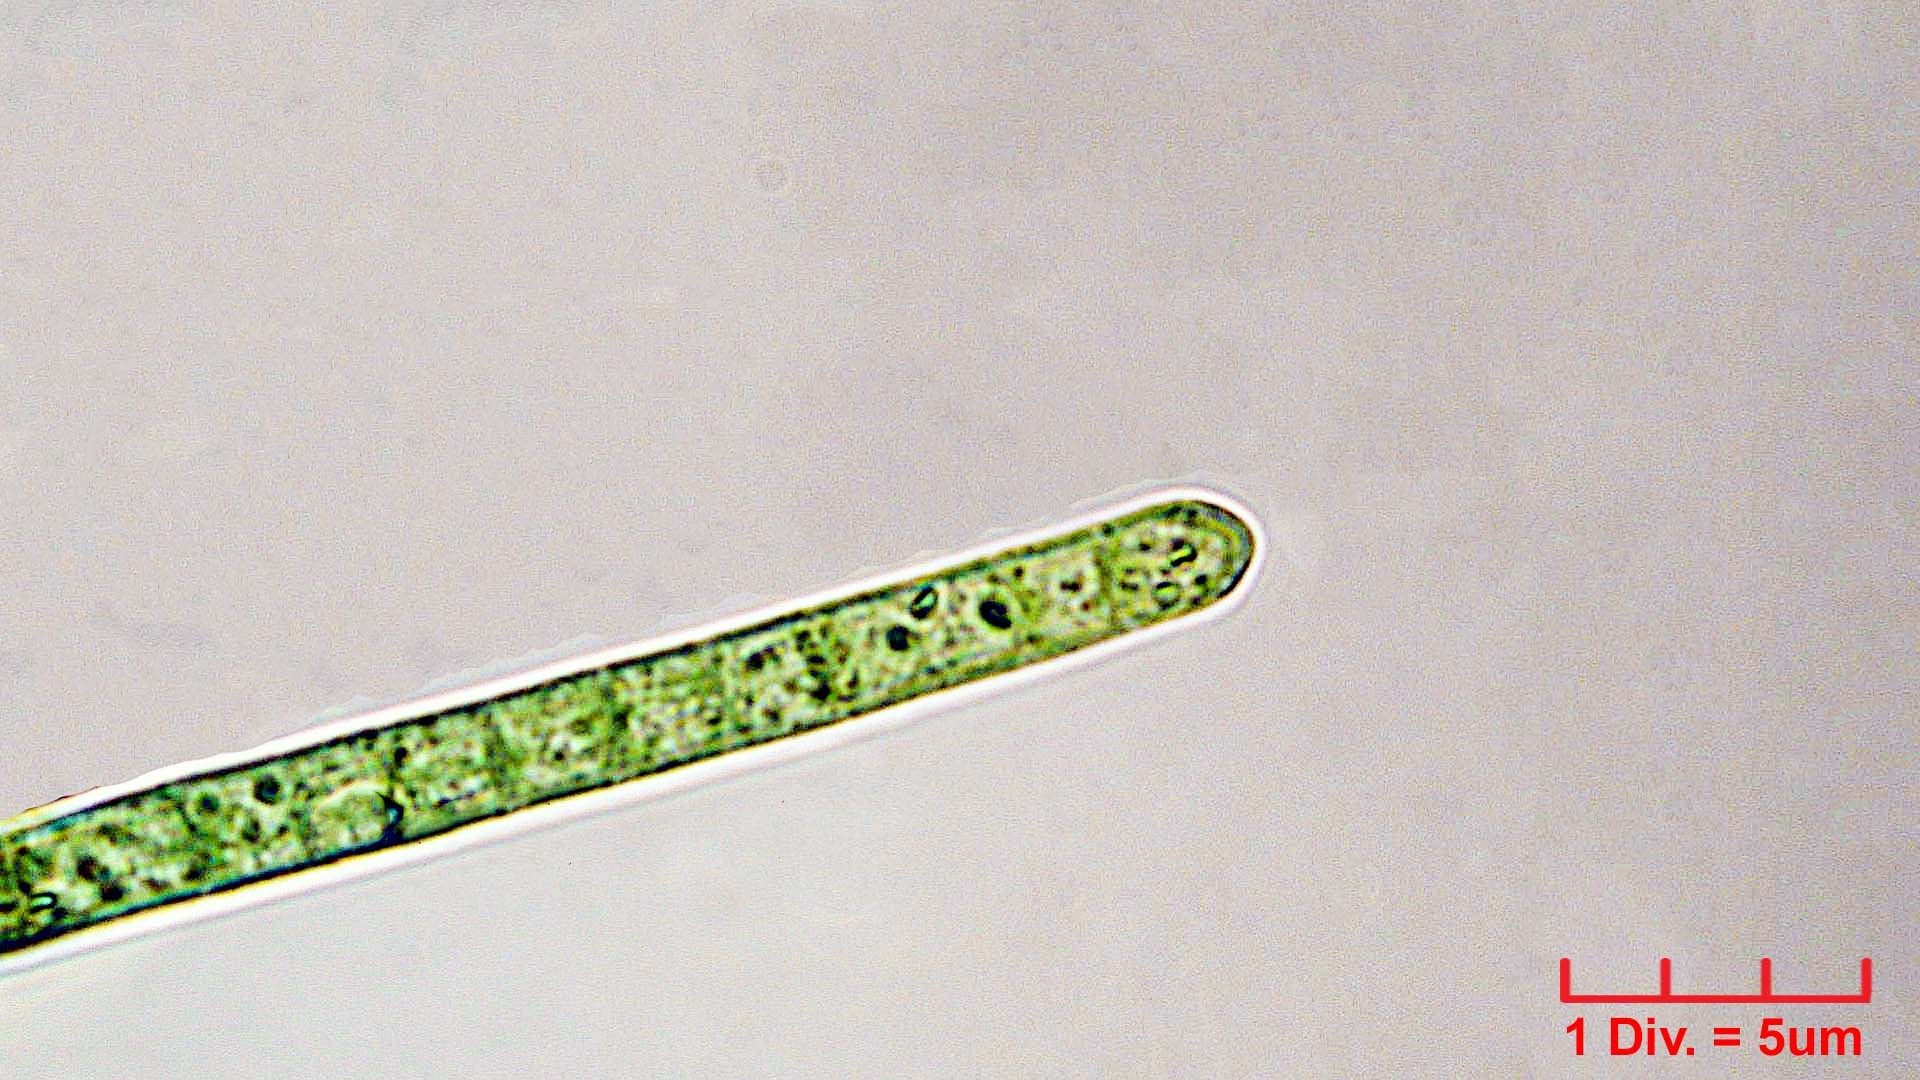 Cyanobacteria/Oscillatoriales/Oscillatoriaceae/Phormidium/retzii/phormidium-retzii-234.jpg